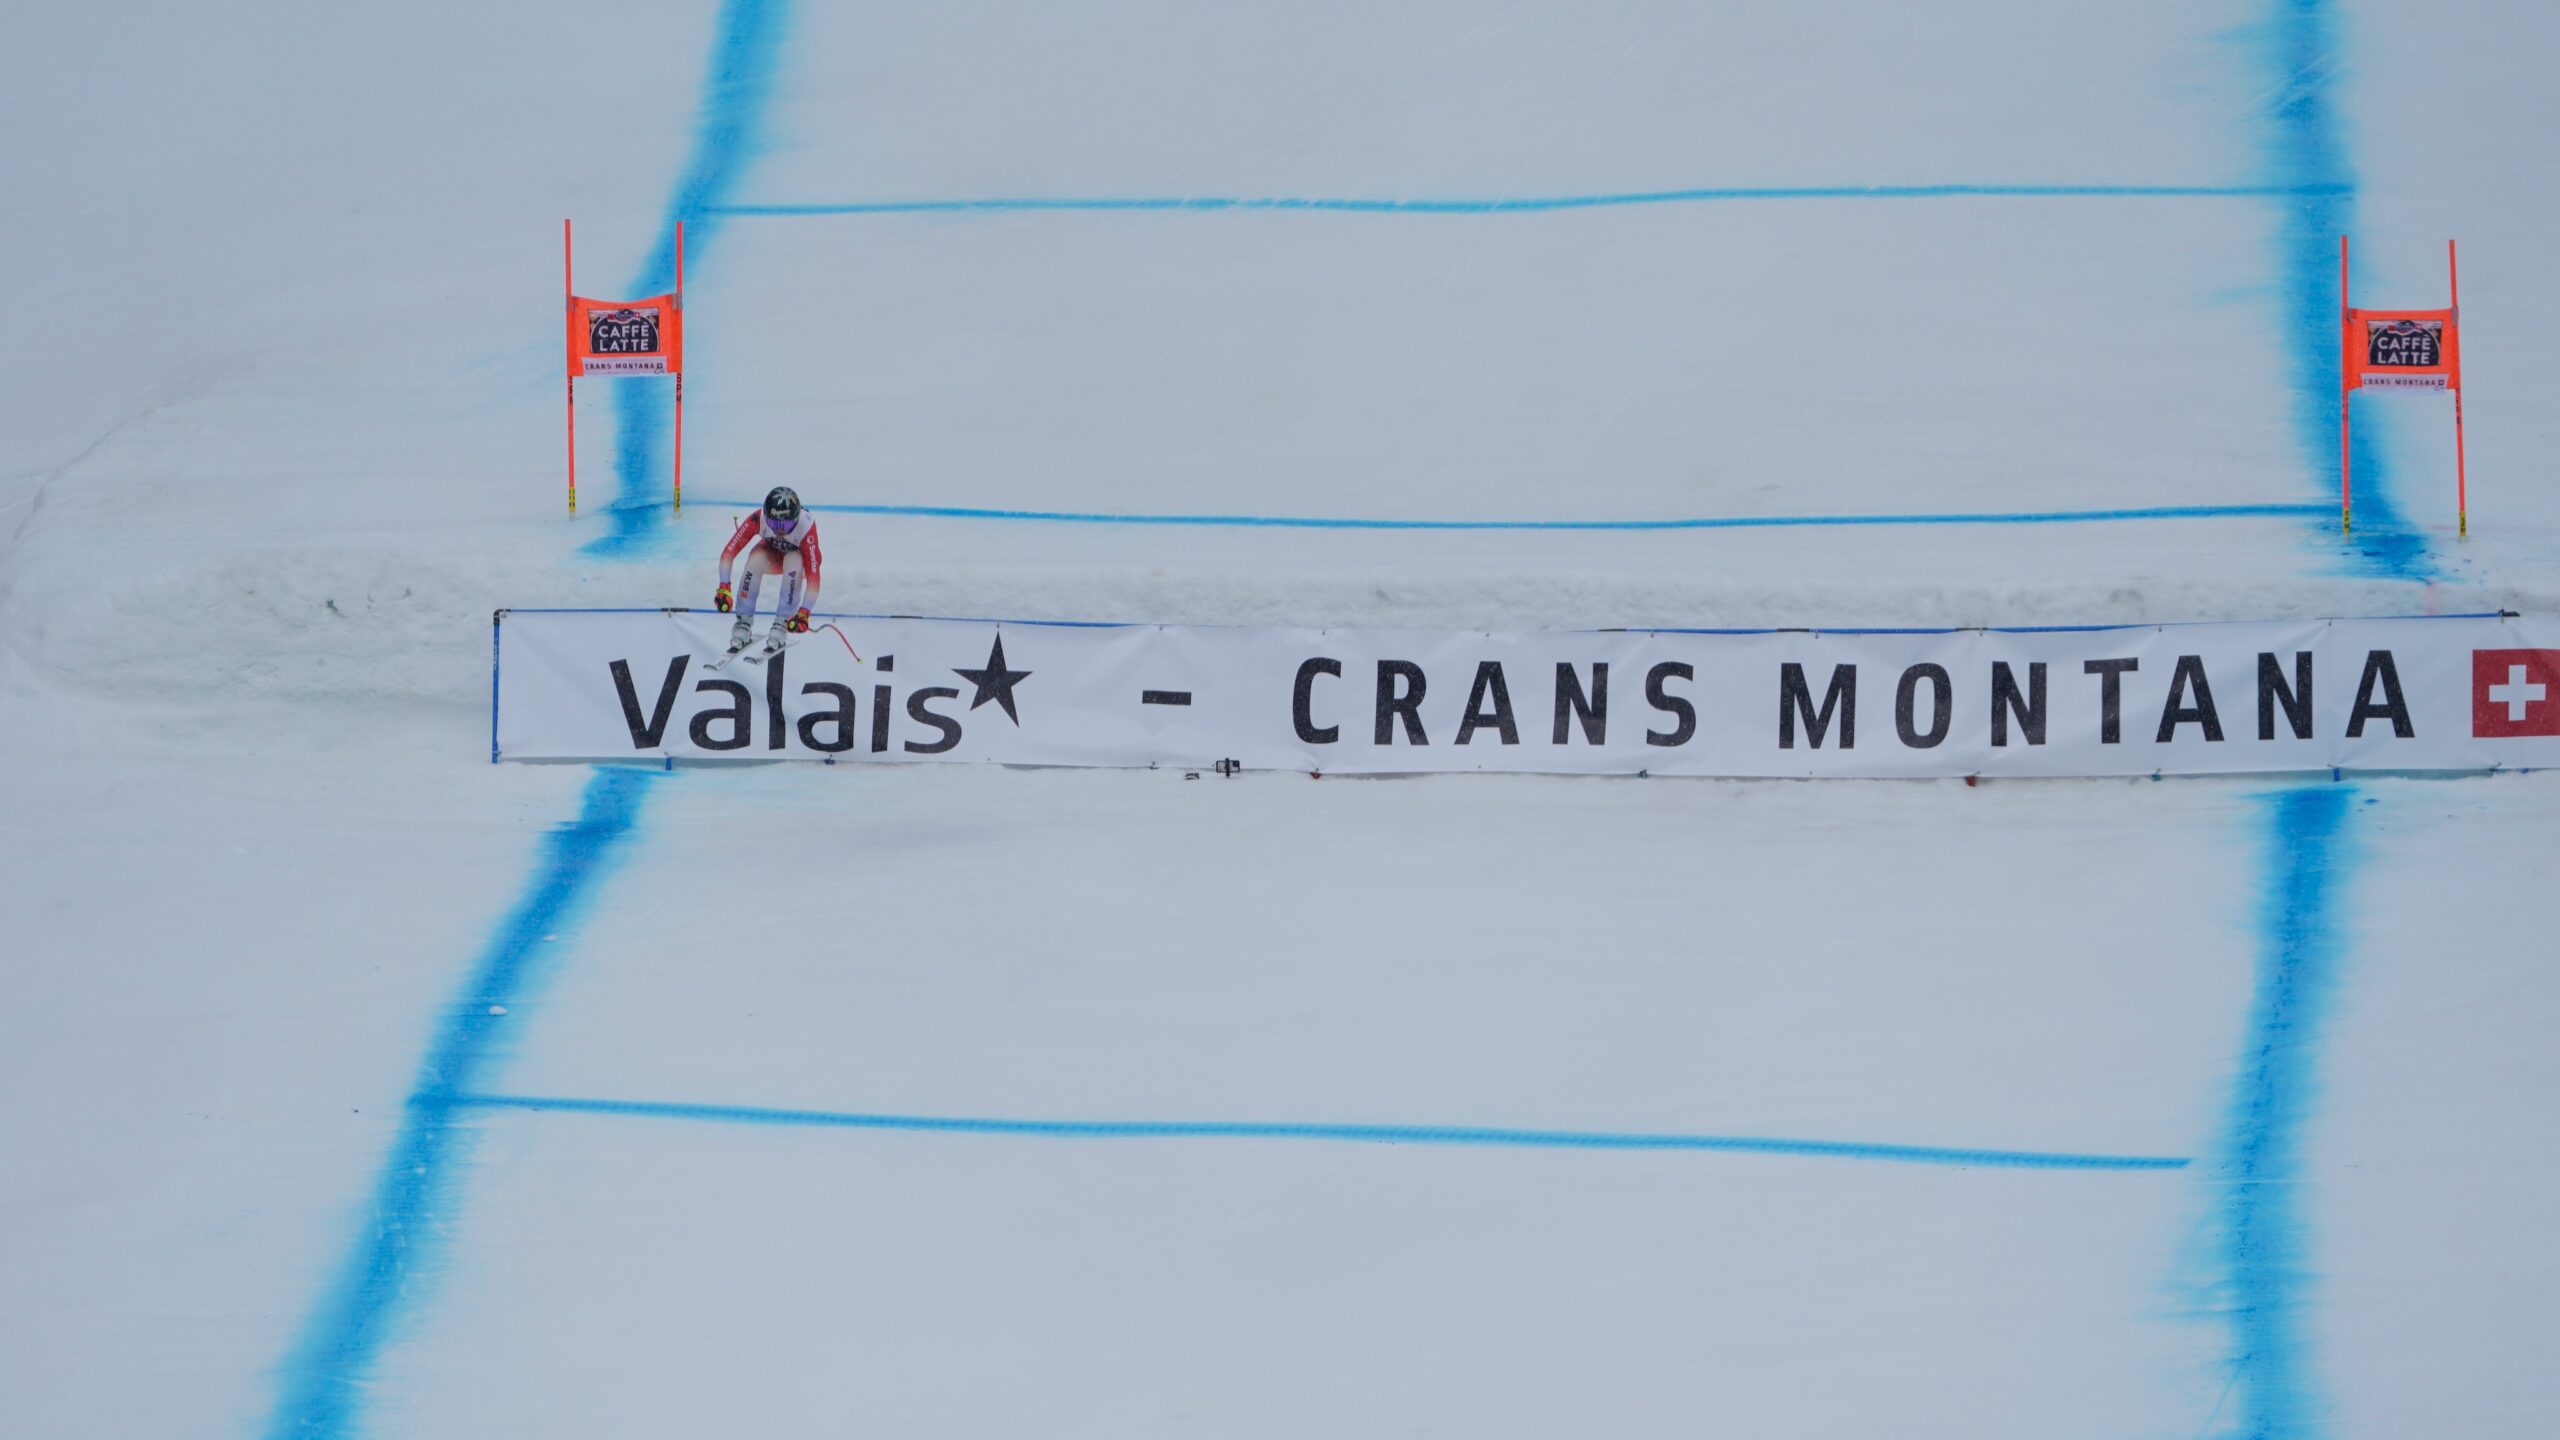 Neuf skieuses pour représenter la Suisse à Crans-Montana